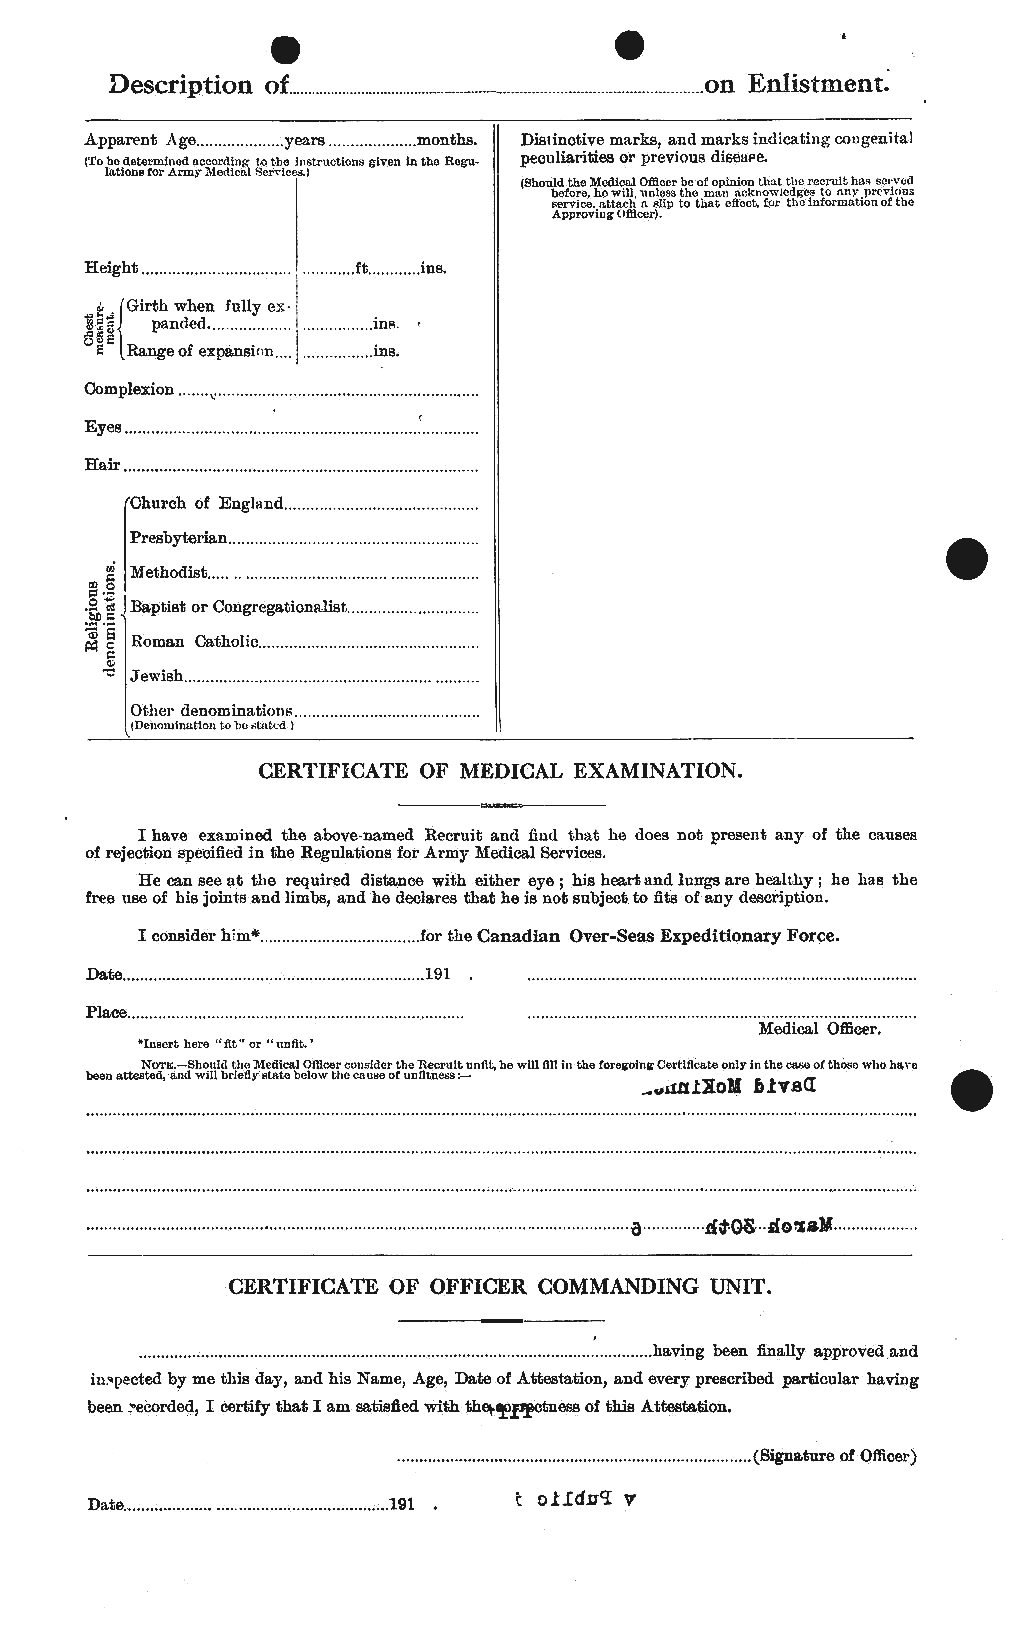 Dossiers du Personnel de la Première Guerre mondiale - CEC 531346b